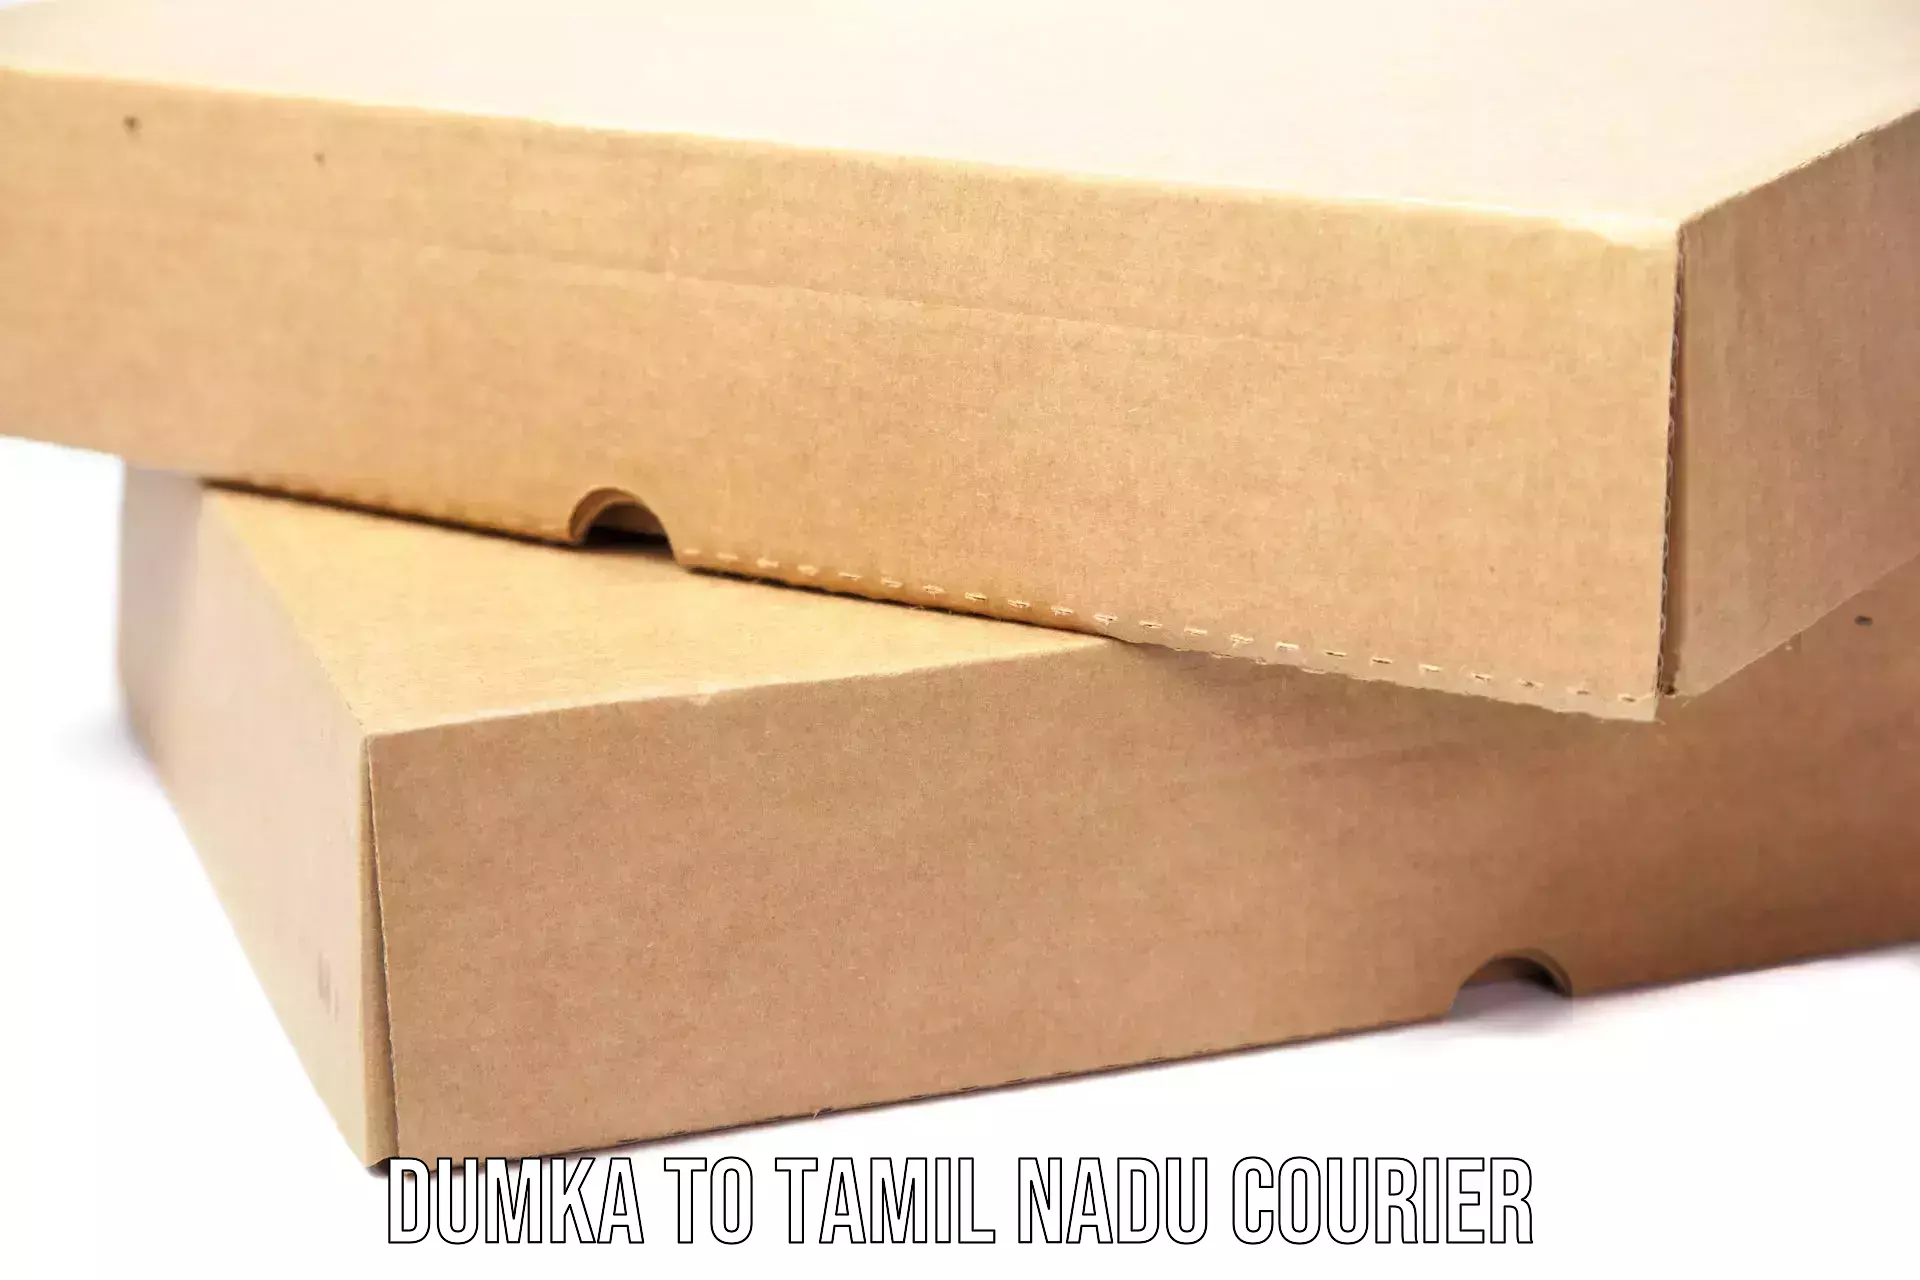 Cost-effective courier options Dumka to Tirunelveli